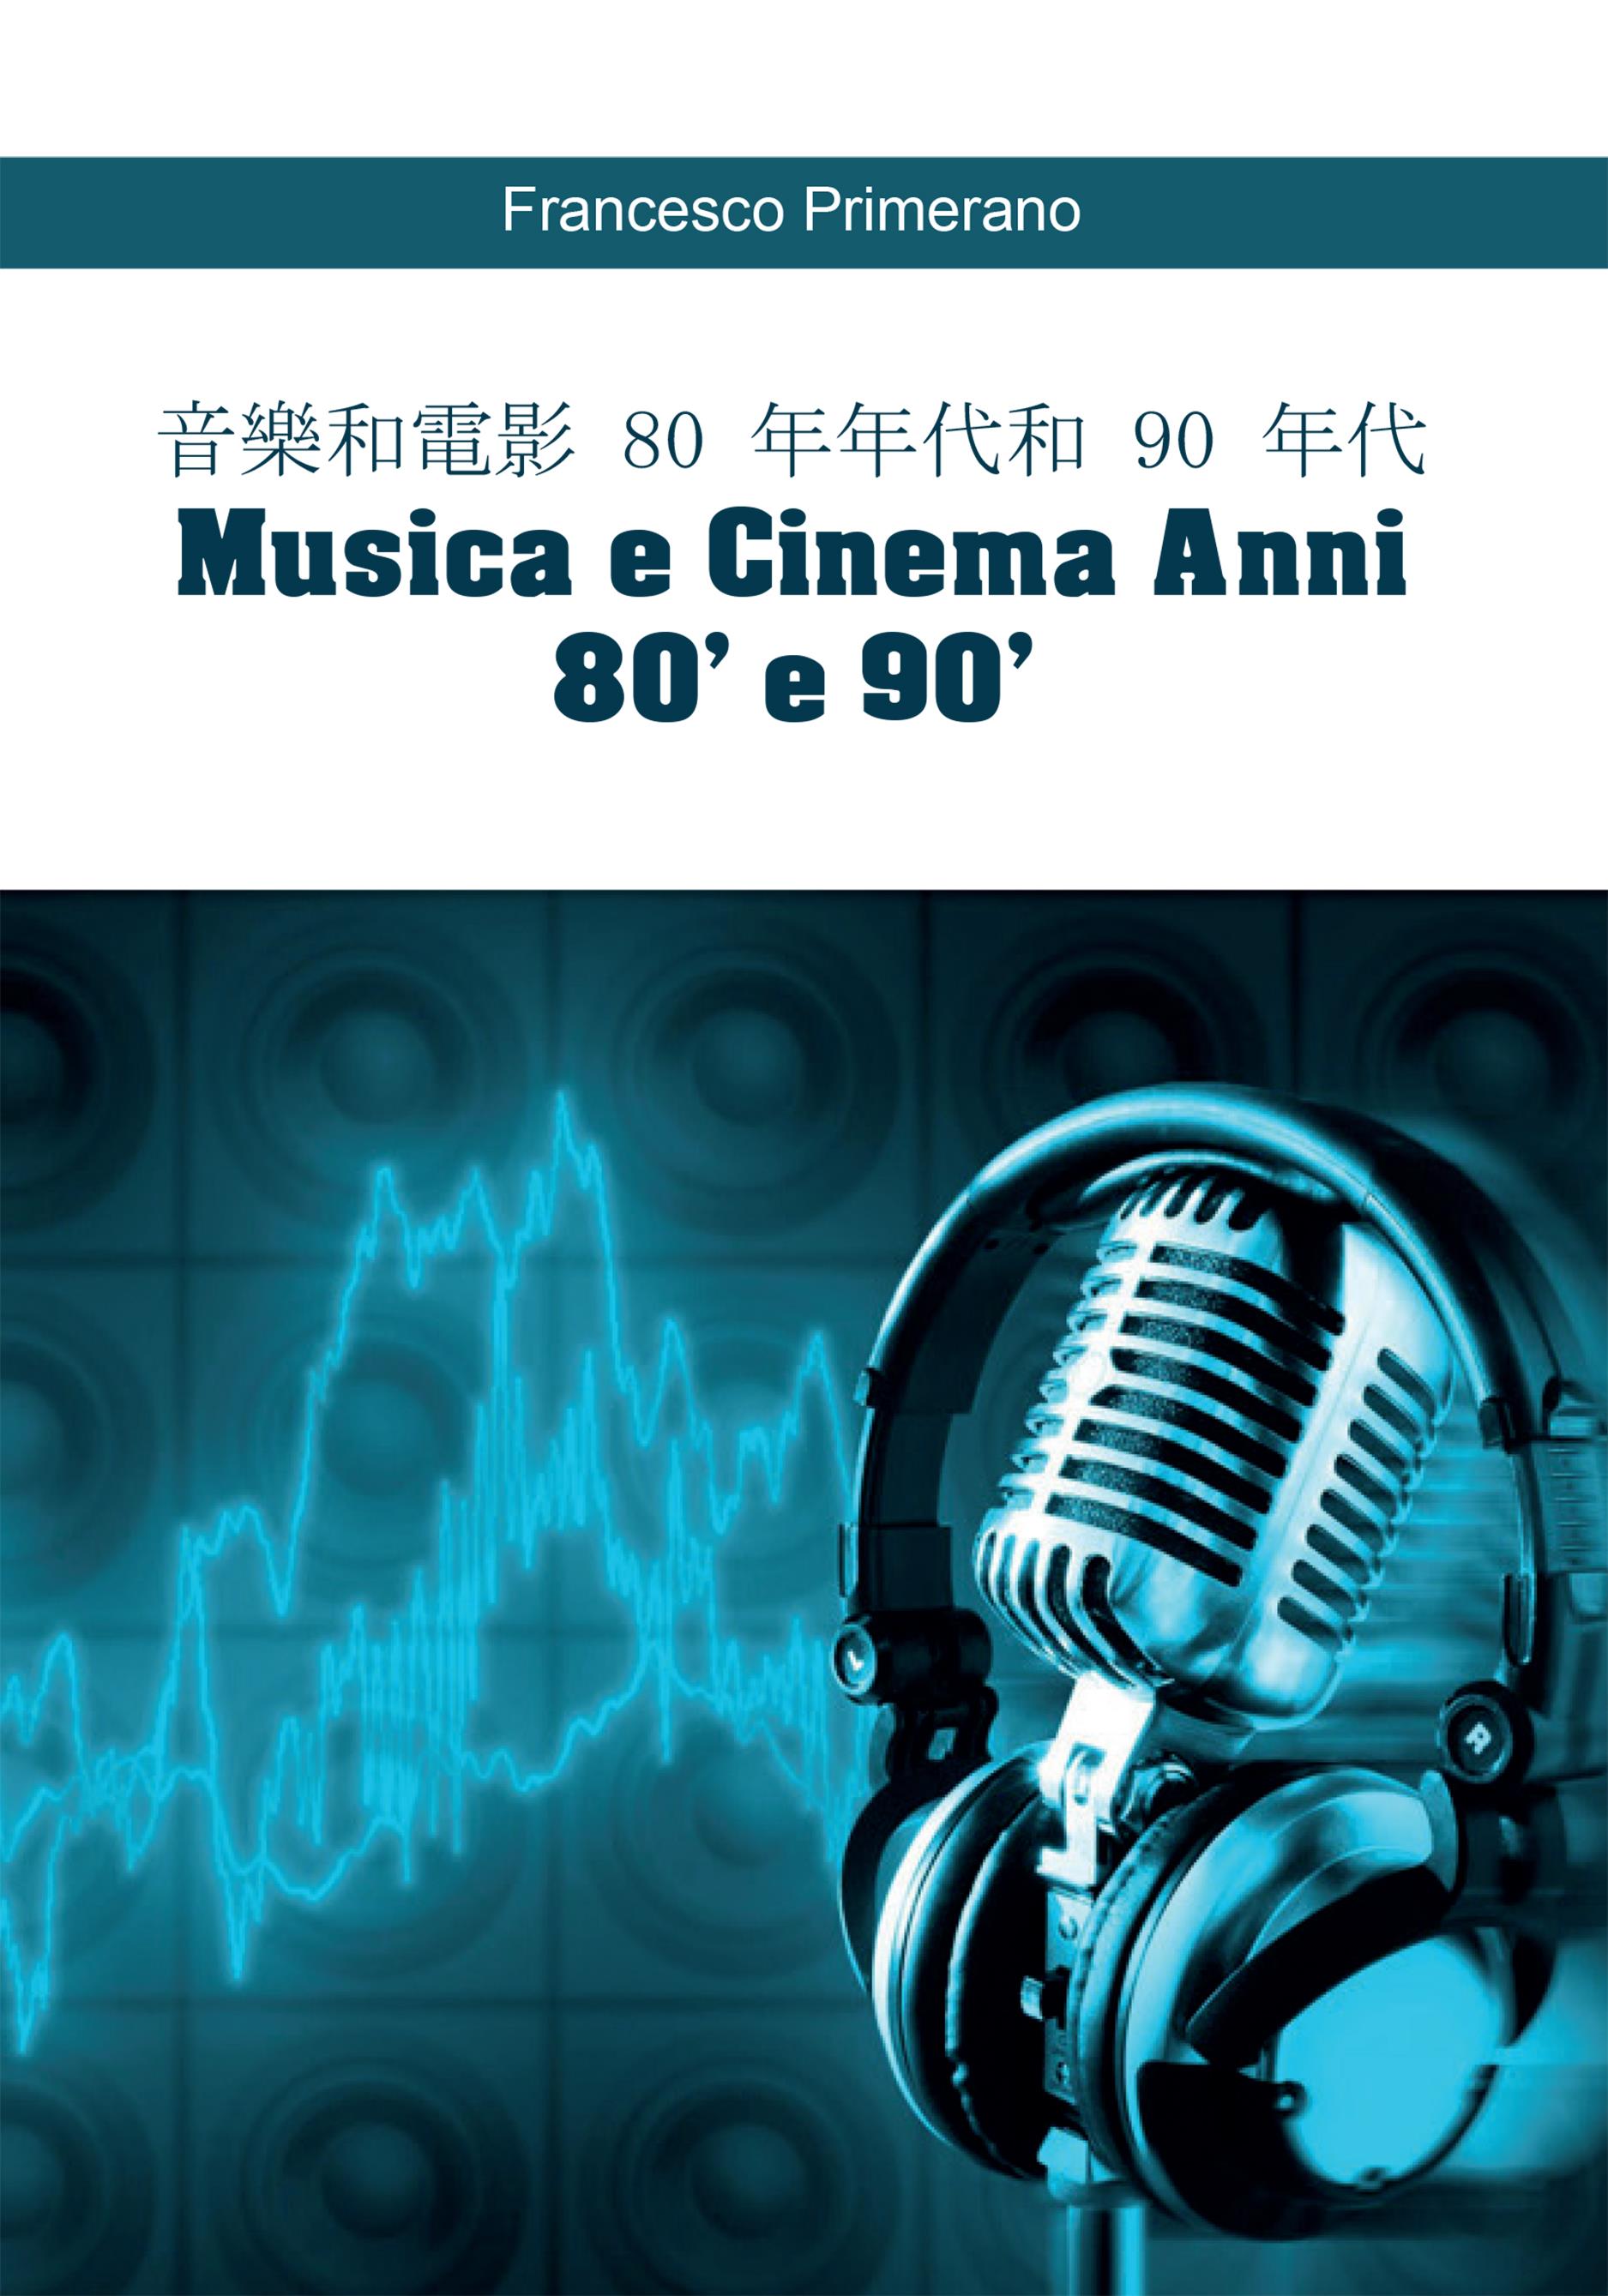 音樂和電影 80 年年代和 90 年代   Musica e Cinema Anni 80' e 90' (versione cinese)